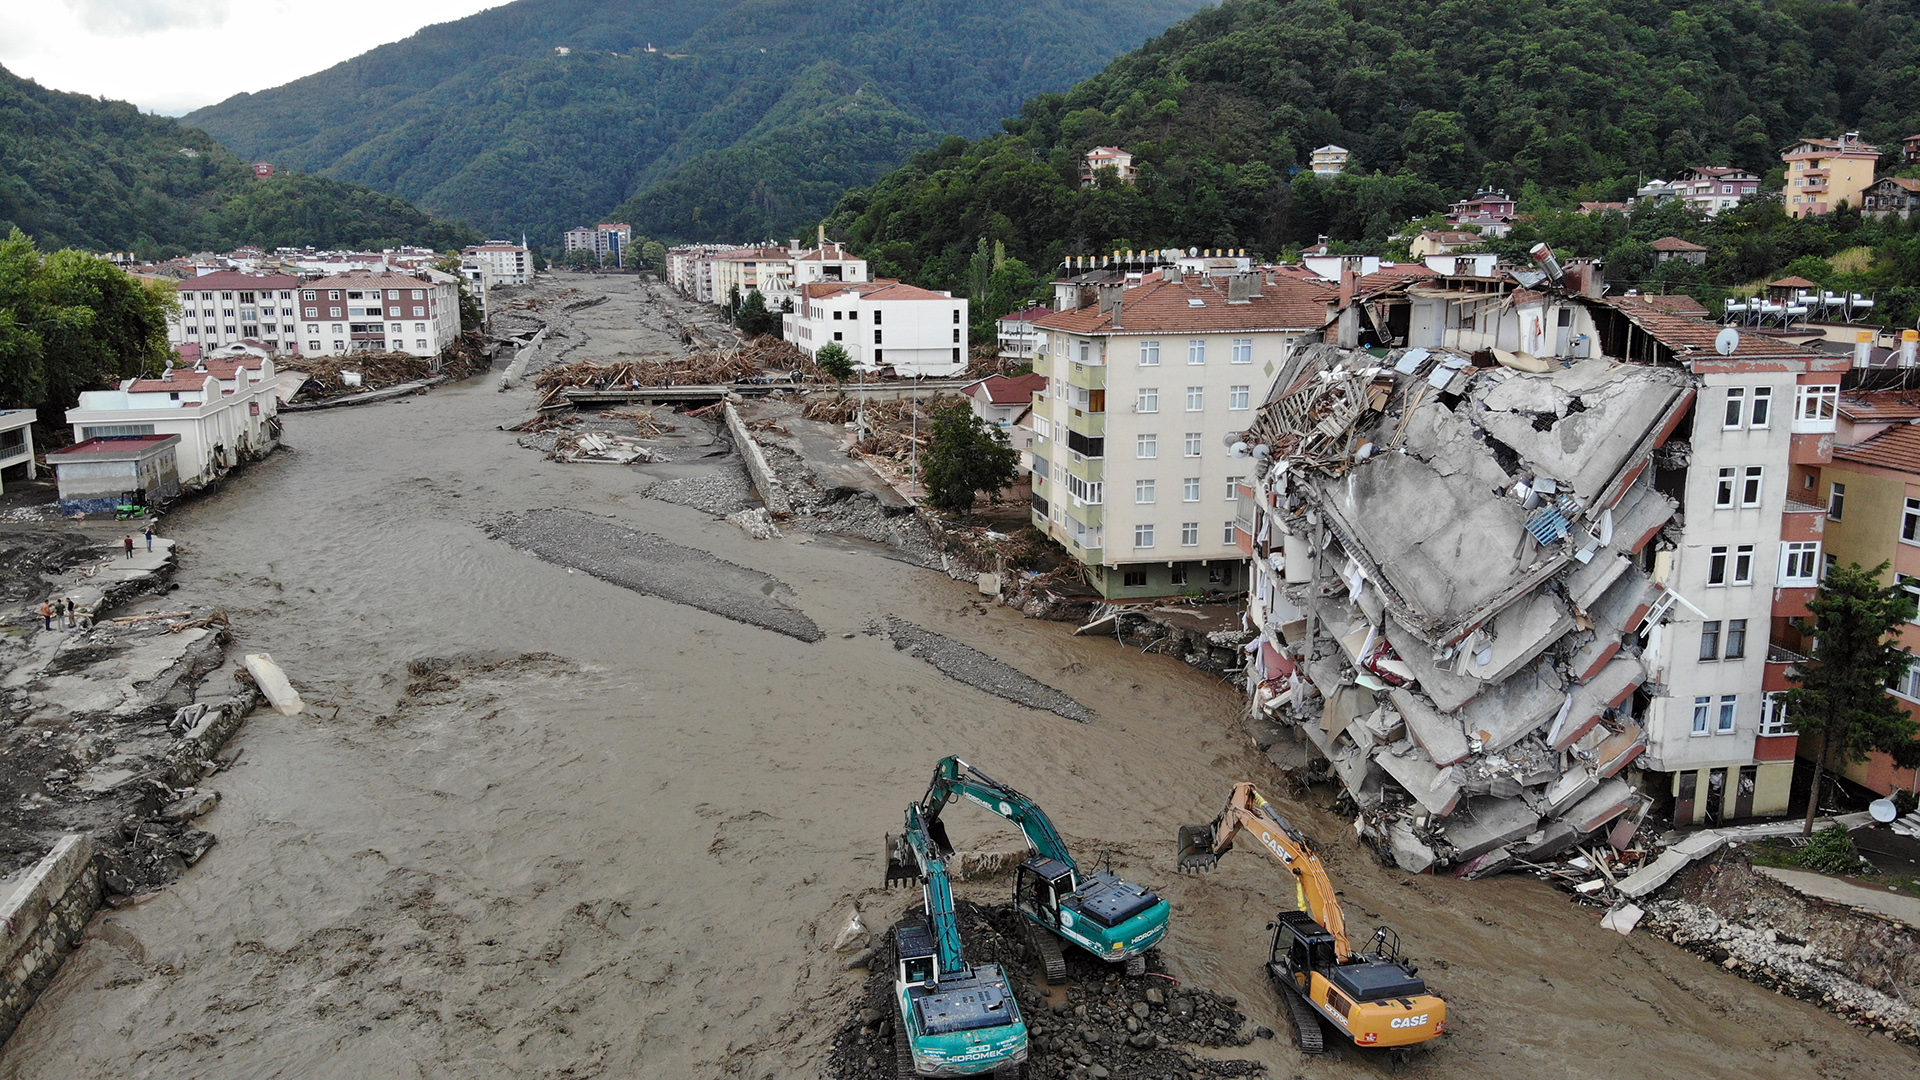  Ein Luftbild zeigt zerstörte Gebäude nach Überschwemmungen und Schlammlawinen in Bozkurt, Türkei.